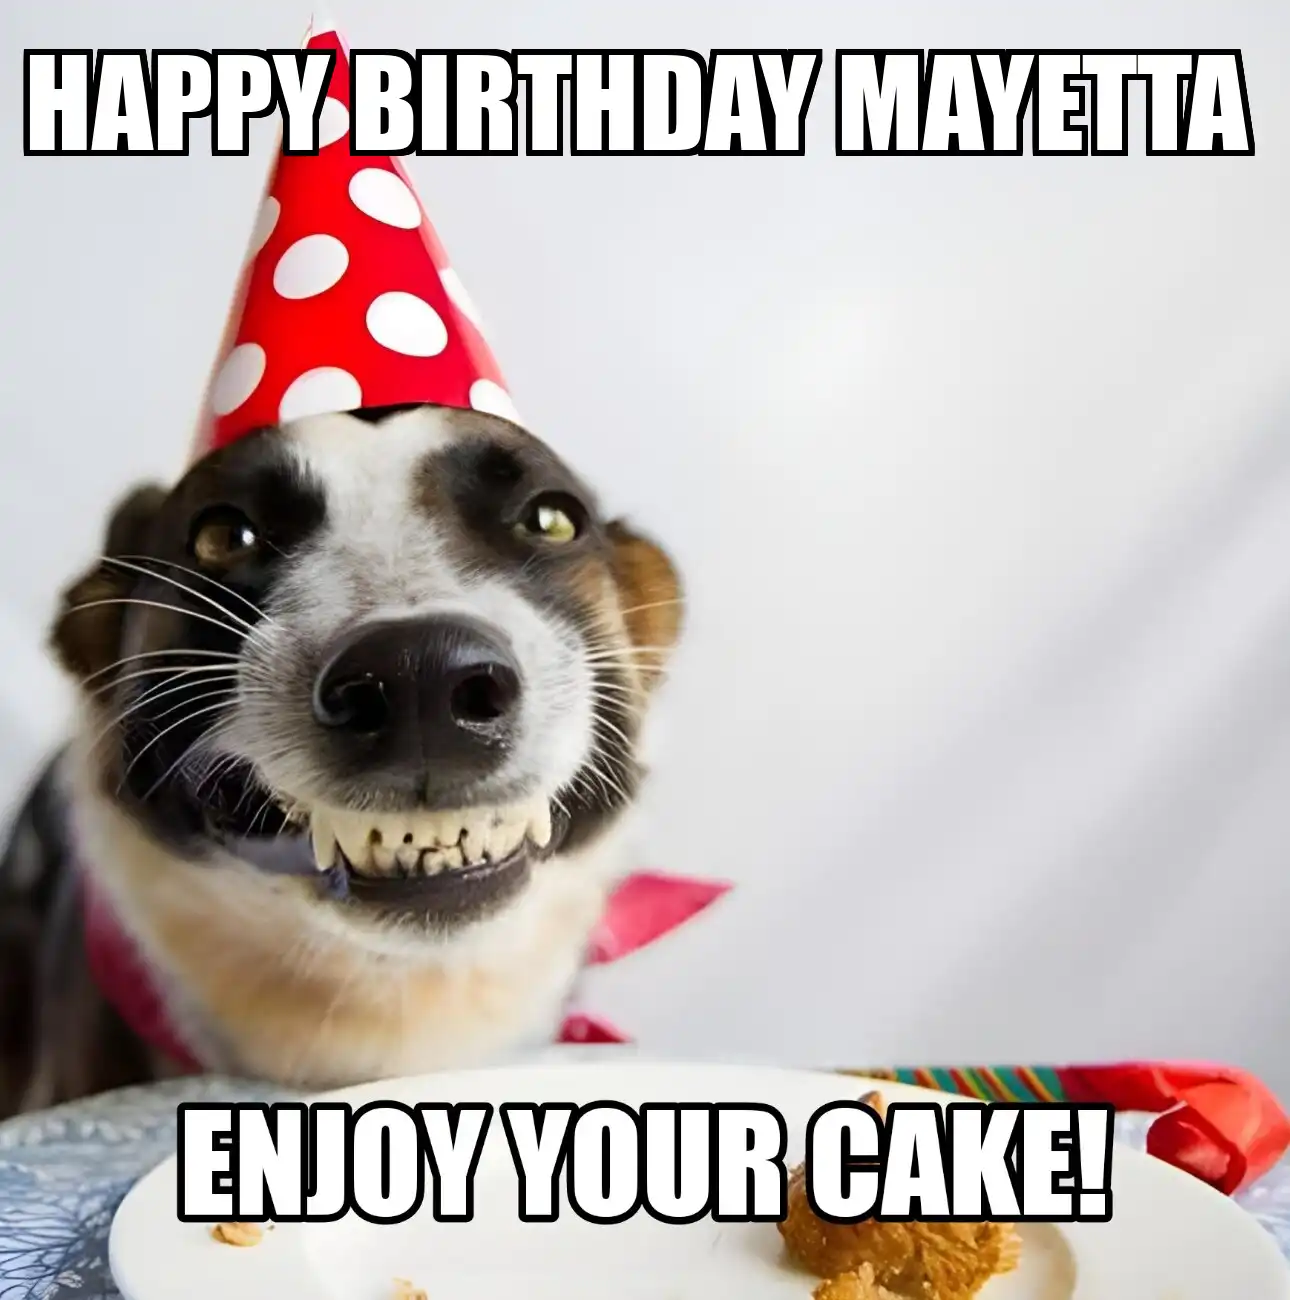 Happy Birthday Mayetta Enjoy Your Cake Dog Meme